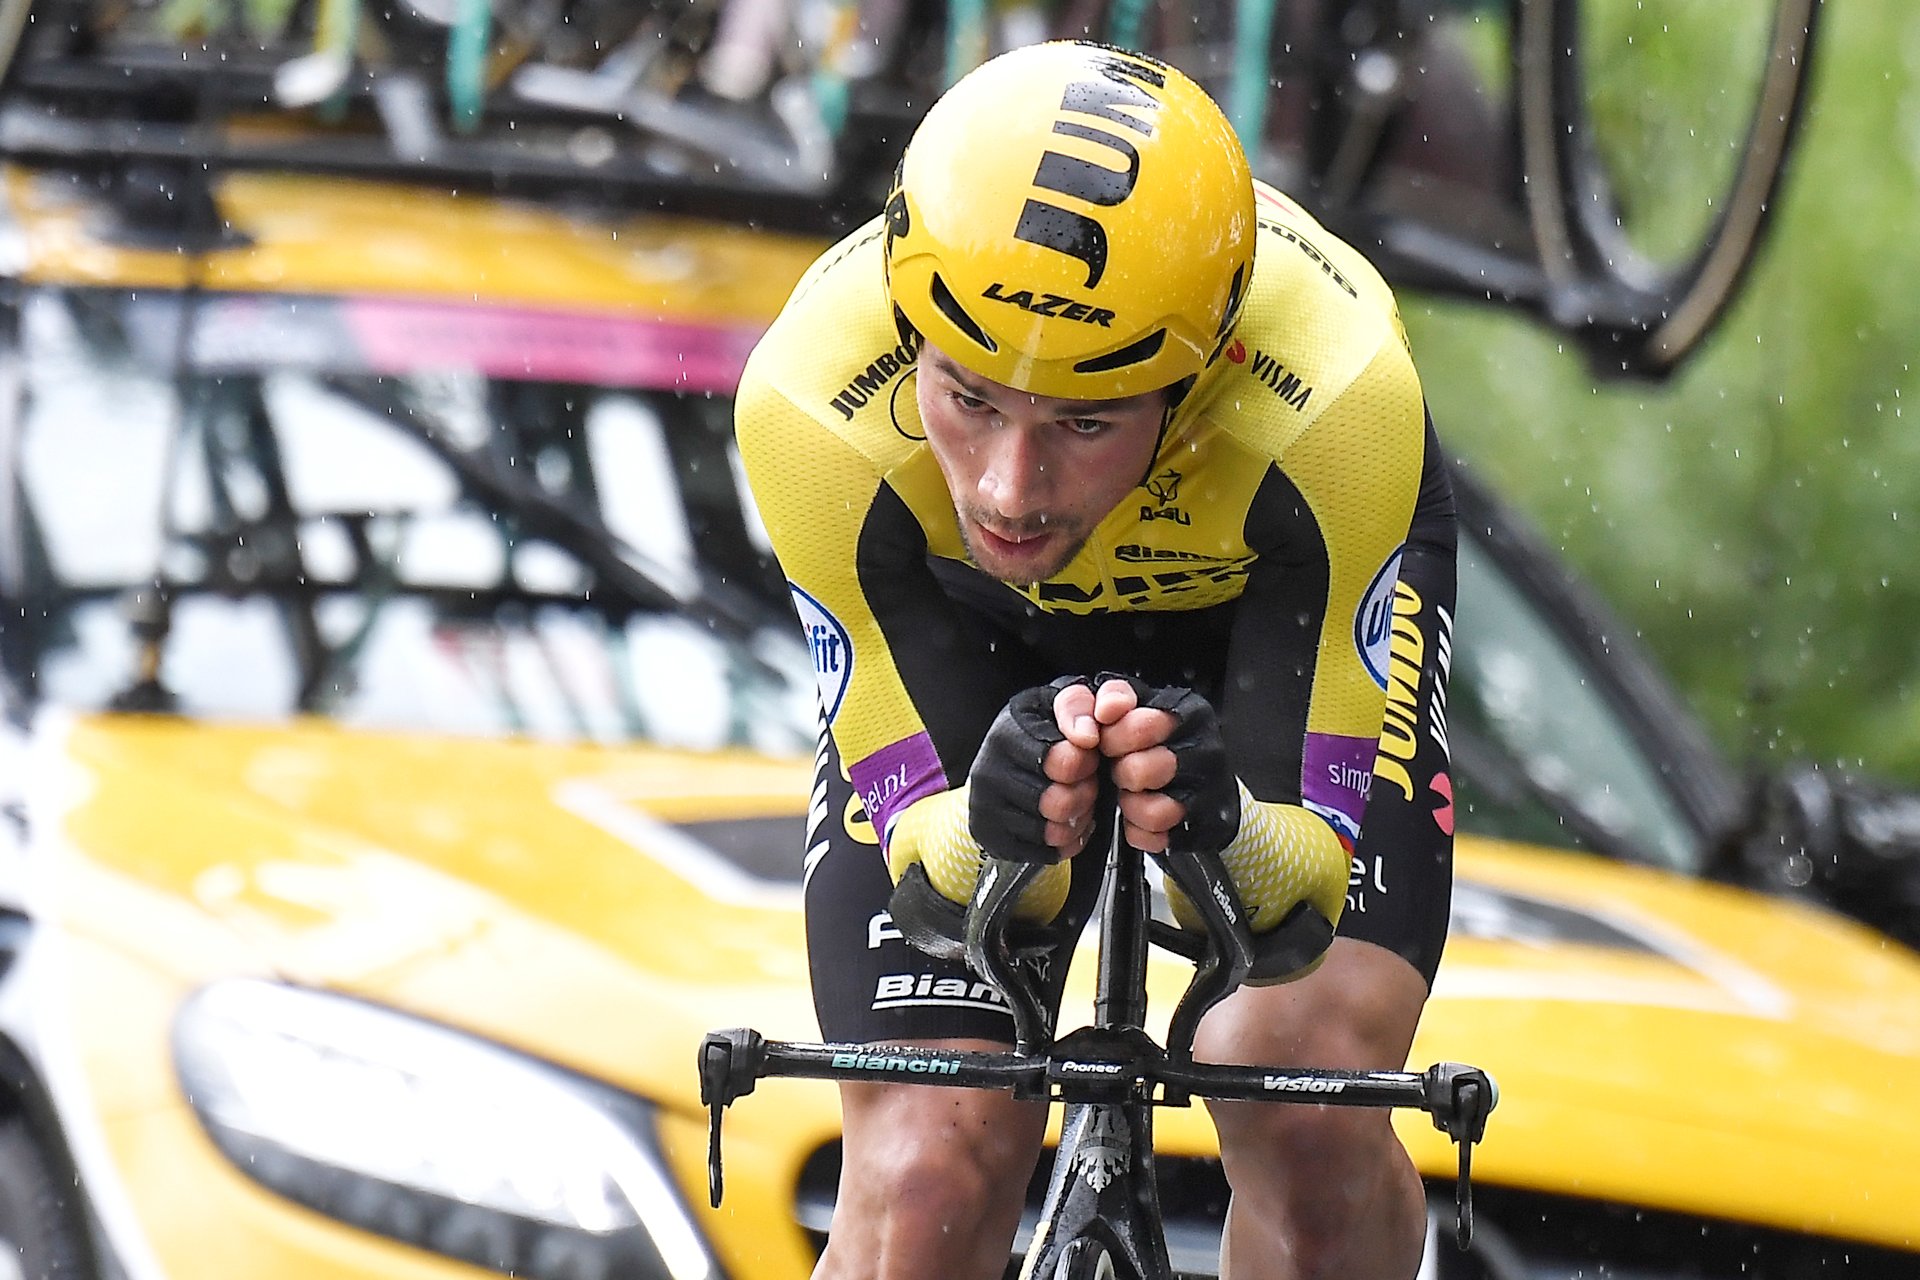 Giro d’Italia 2019: etap 9. Primoz Roglic z drugą czasówką